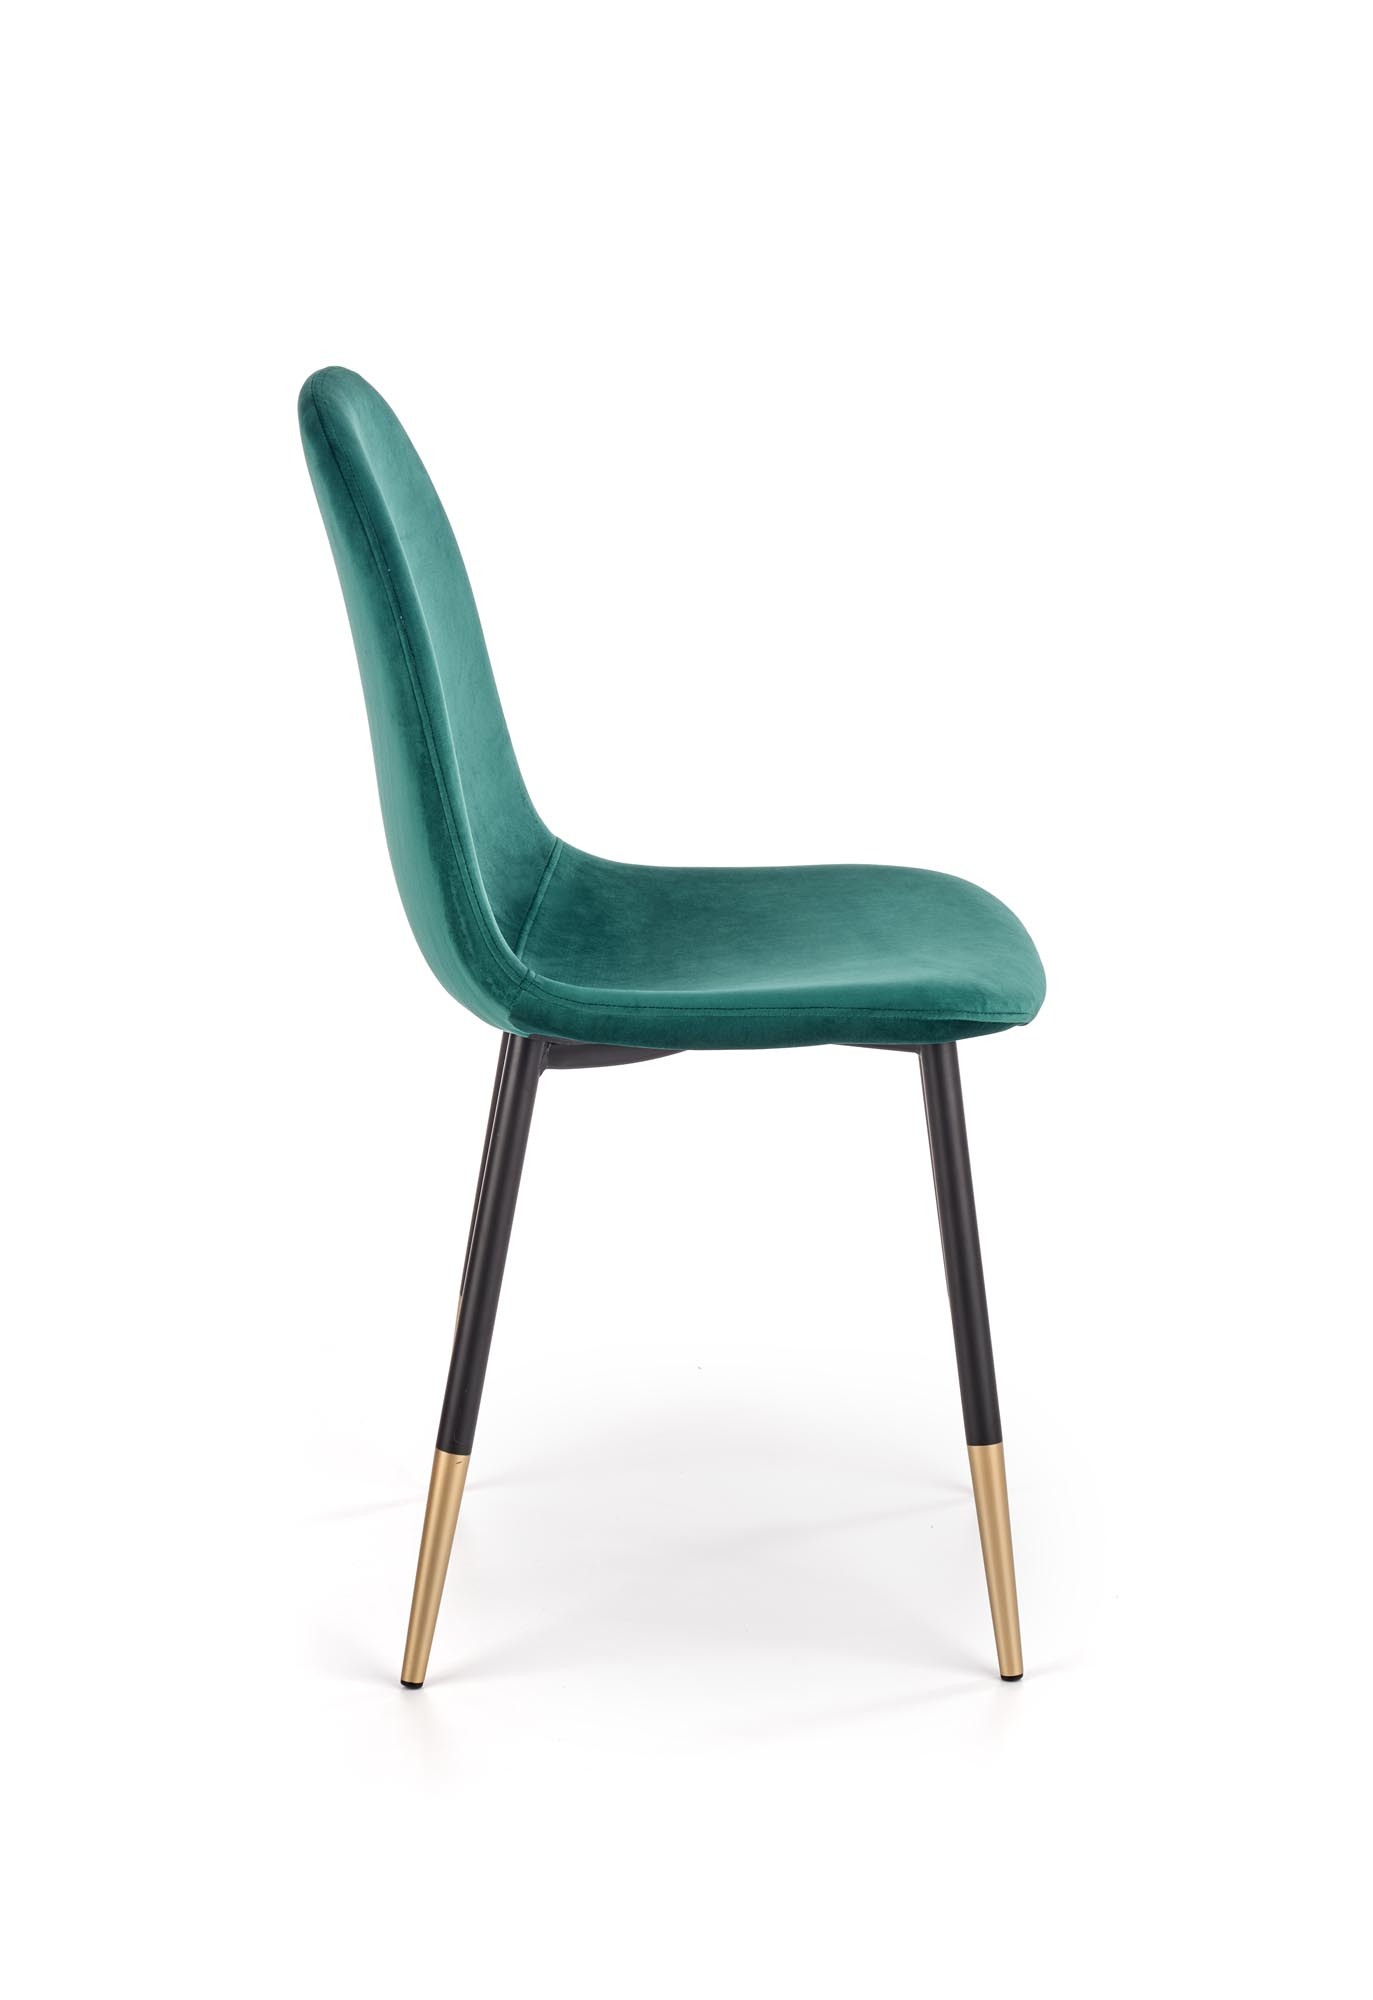 K379 krzesło ciemny zielony